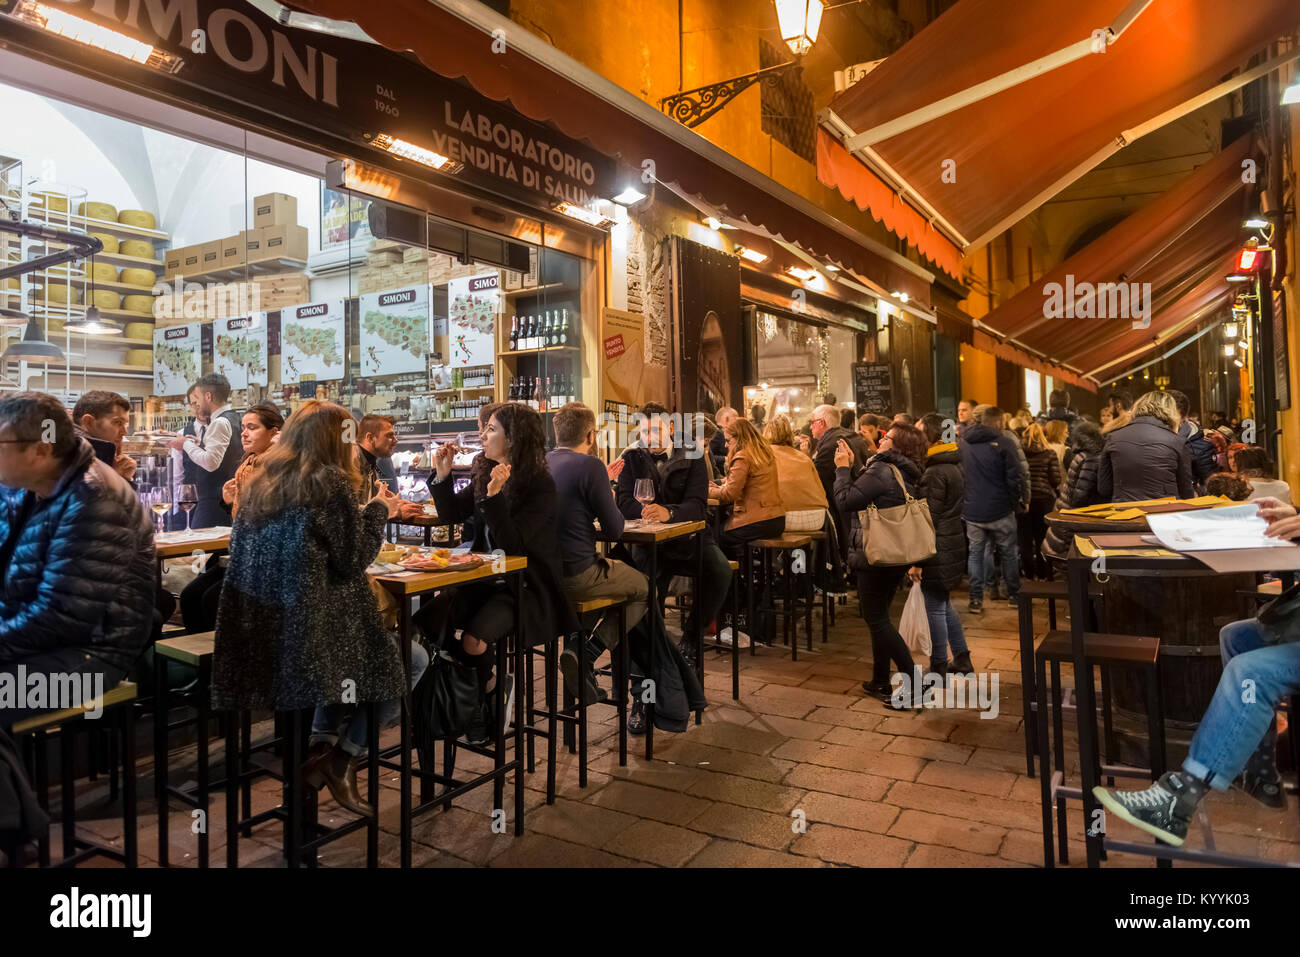 Bologna, Italien - die Leute draußen sitzen Essen in Restaurants, Cafés und Bars in der Via Pescherie Vecchie, eine Straße in der Stadt Bologna, Italien bei Nacht Stockfoto